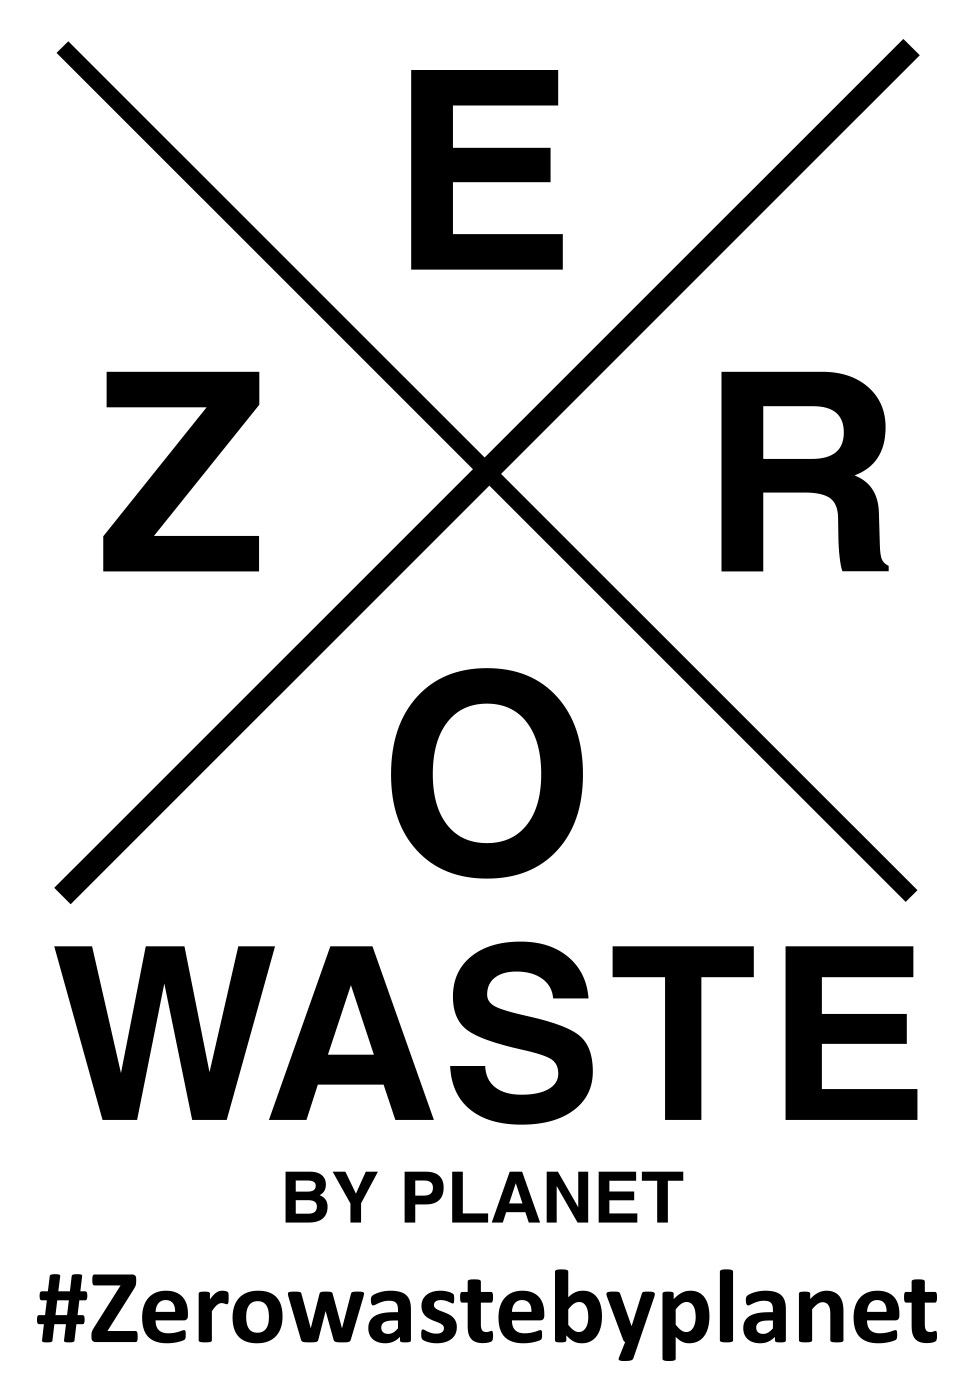 ZERO WASTE BY PLANET #Zerowastebyplanet